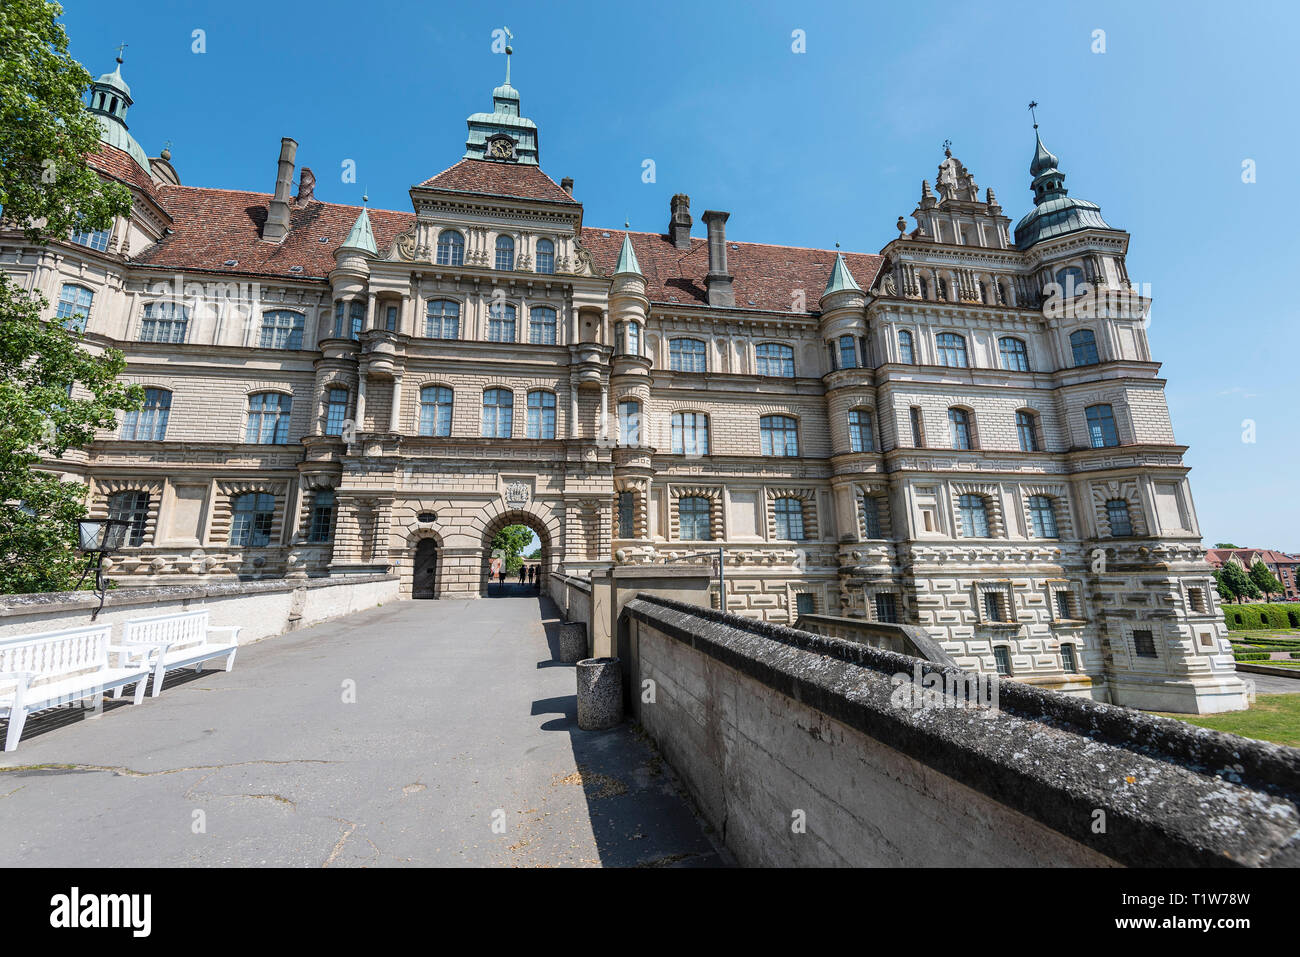 Castillo, edificio renacentista, Guestrow, Mecklemburgo-Pomerania Occidental, Alemania Foto de stock